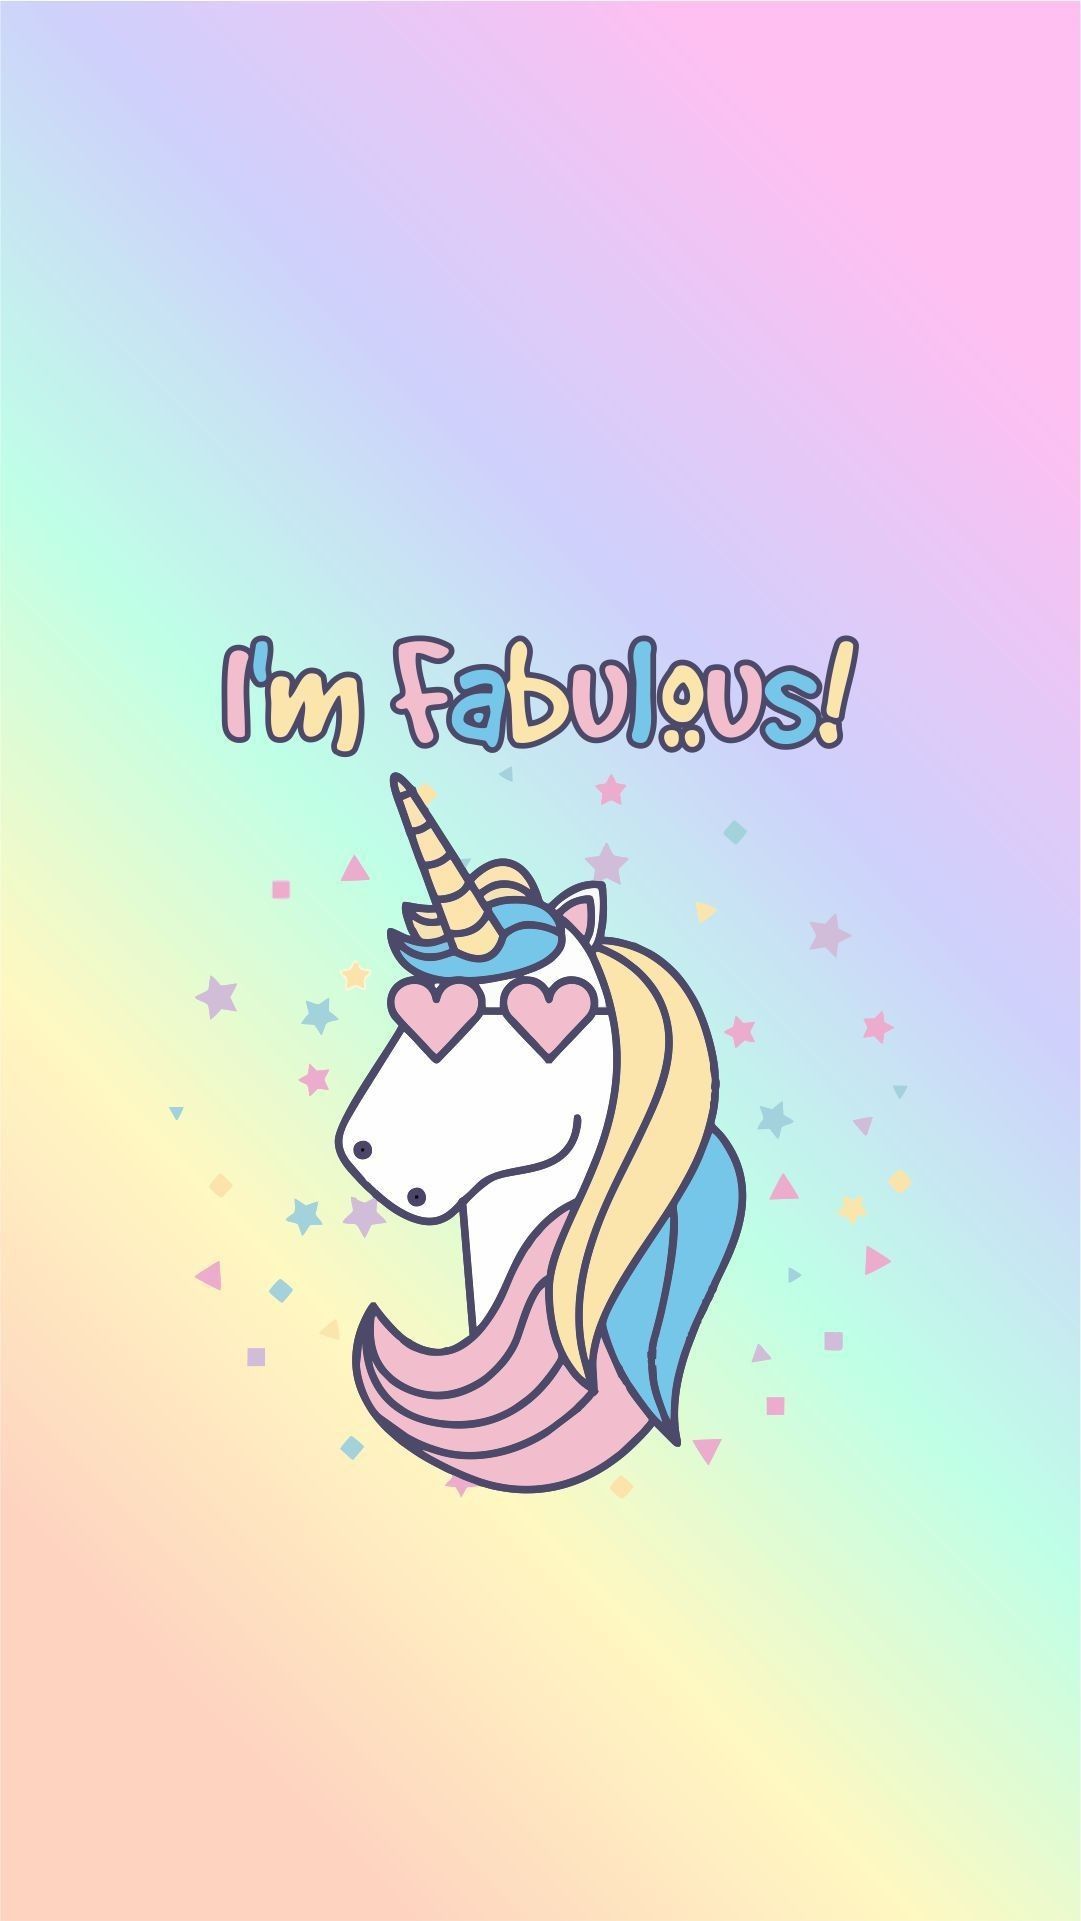 unicorn funny wallpaper